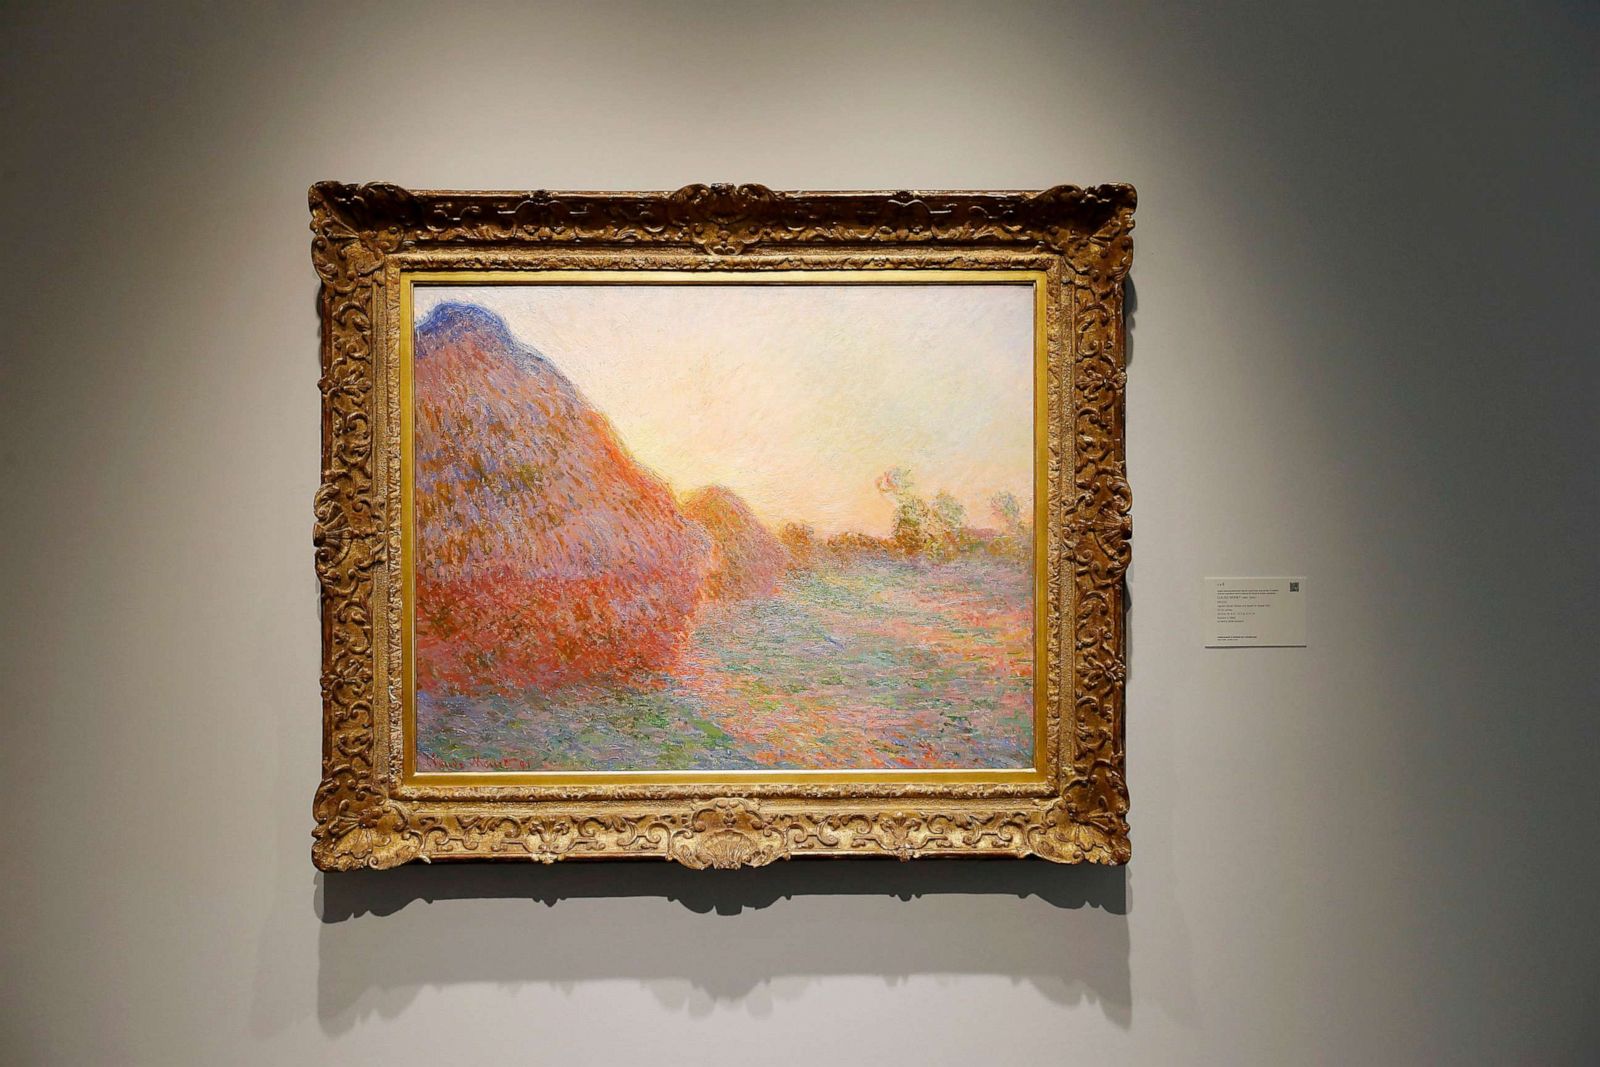 A última vez que "Meules" foi a leilão aconteceu em 1986, e na época a obra de Monet foi vendida por um valor 44 vezes menor do que o obtido nesta semana